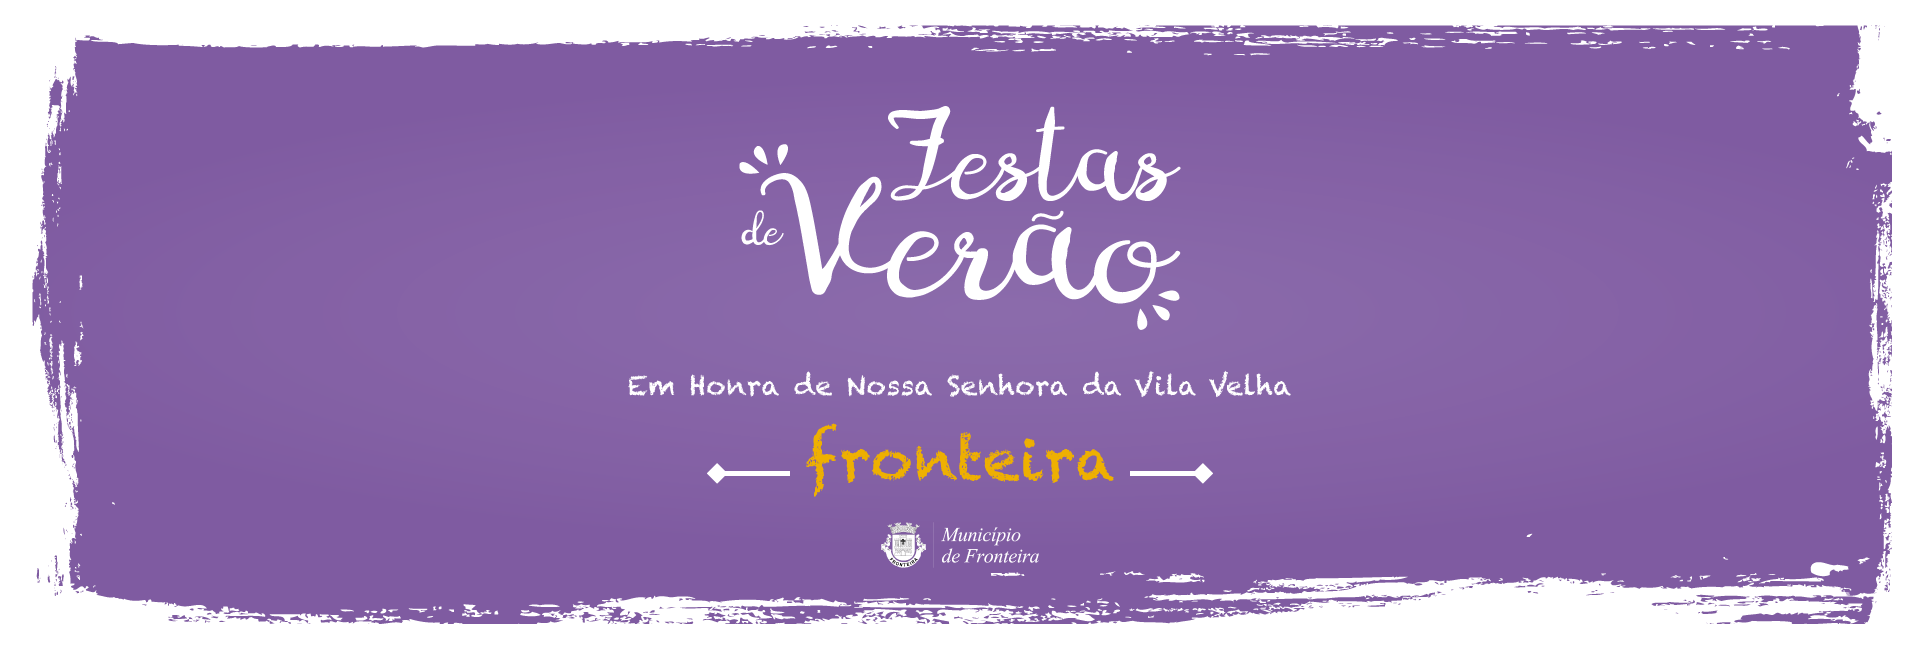 (Português) As Festas de Verão de Fronteira são já no próximo fim de semana!